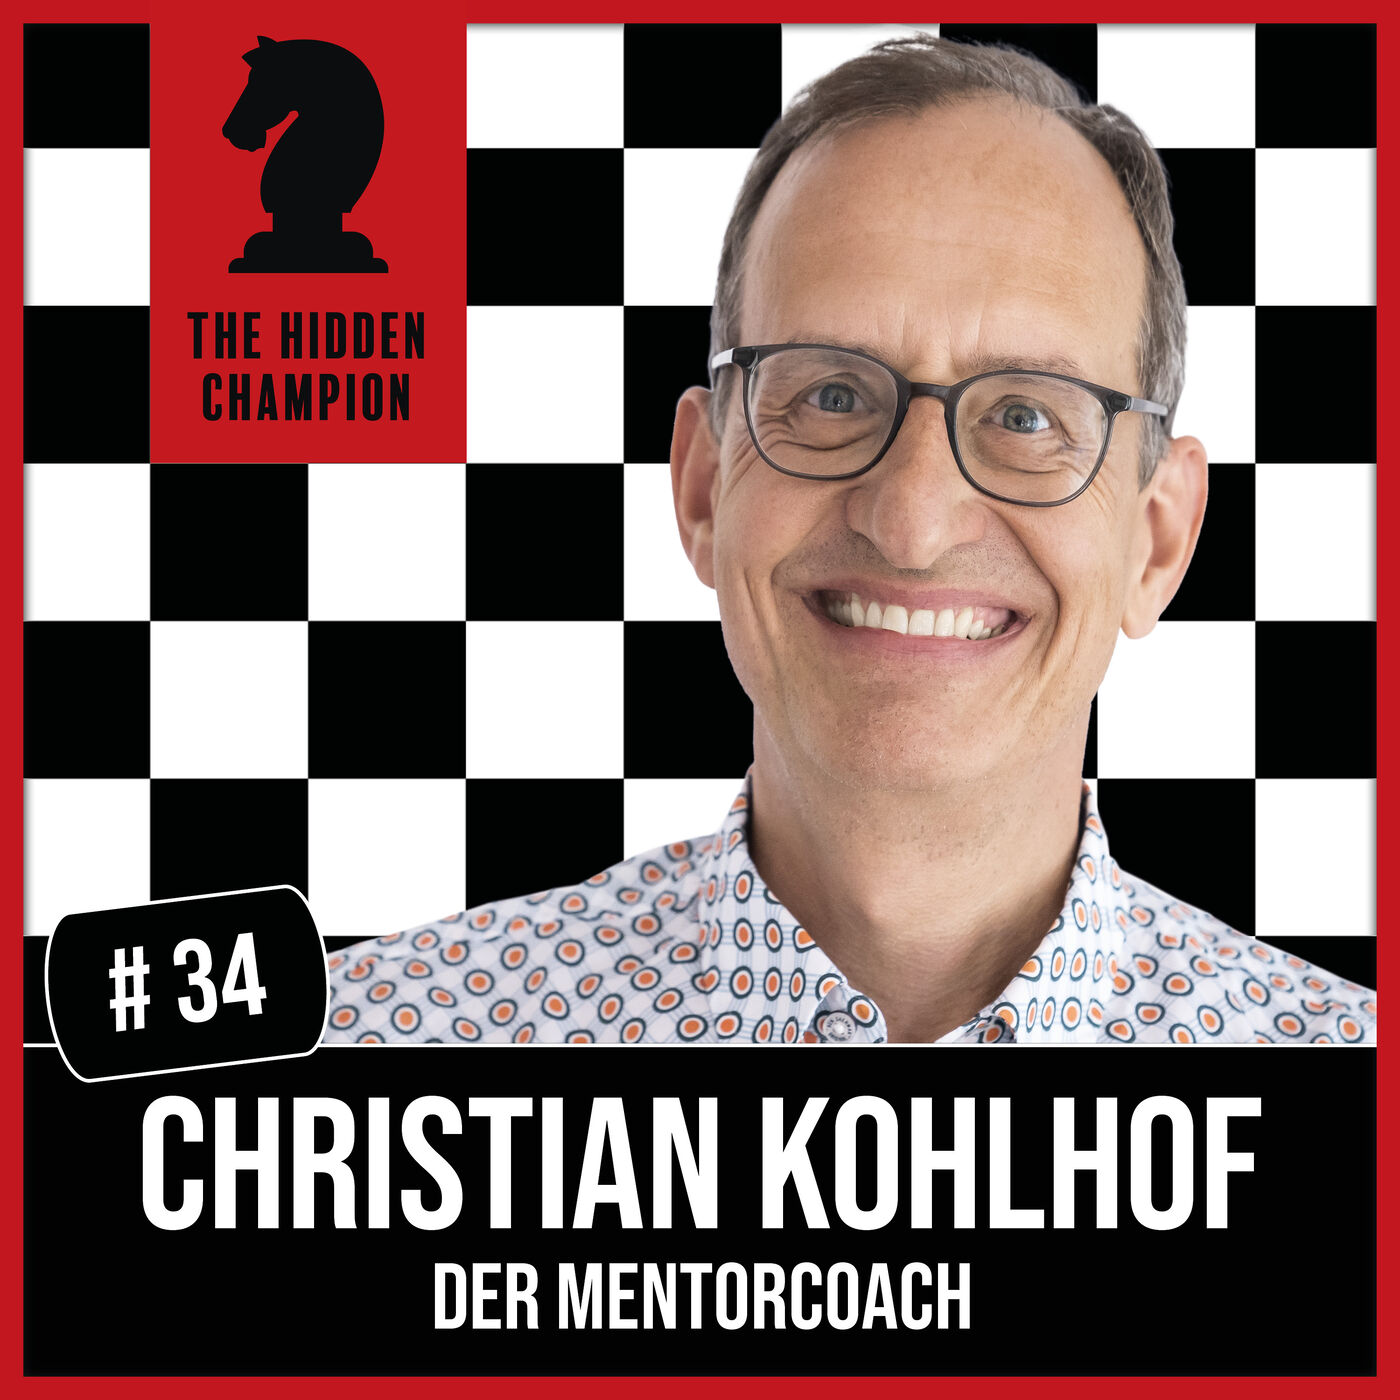 34. Ein Ratschlag ist auch ein Schlag! Christian Kohlhof teilt als Mentorcoach Erfahrungen anstatt Ratschläge zu verteilen.